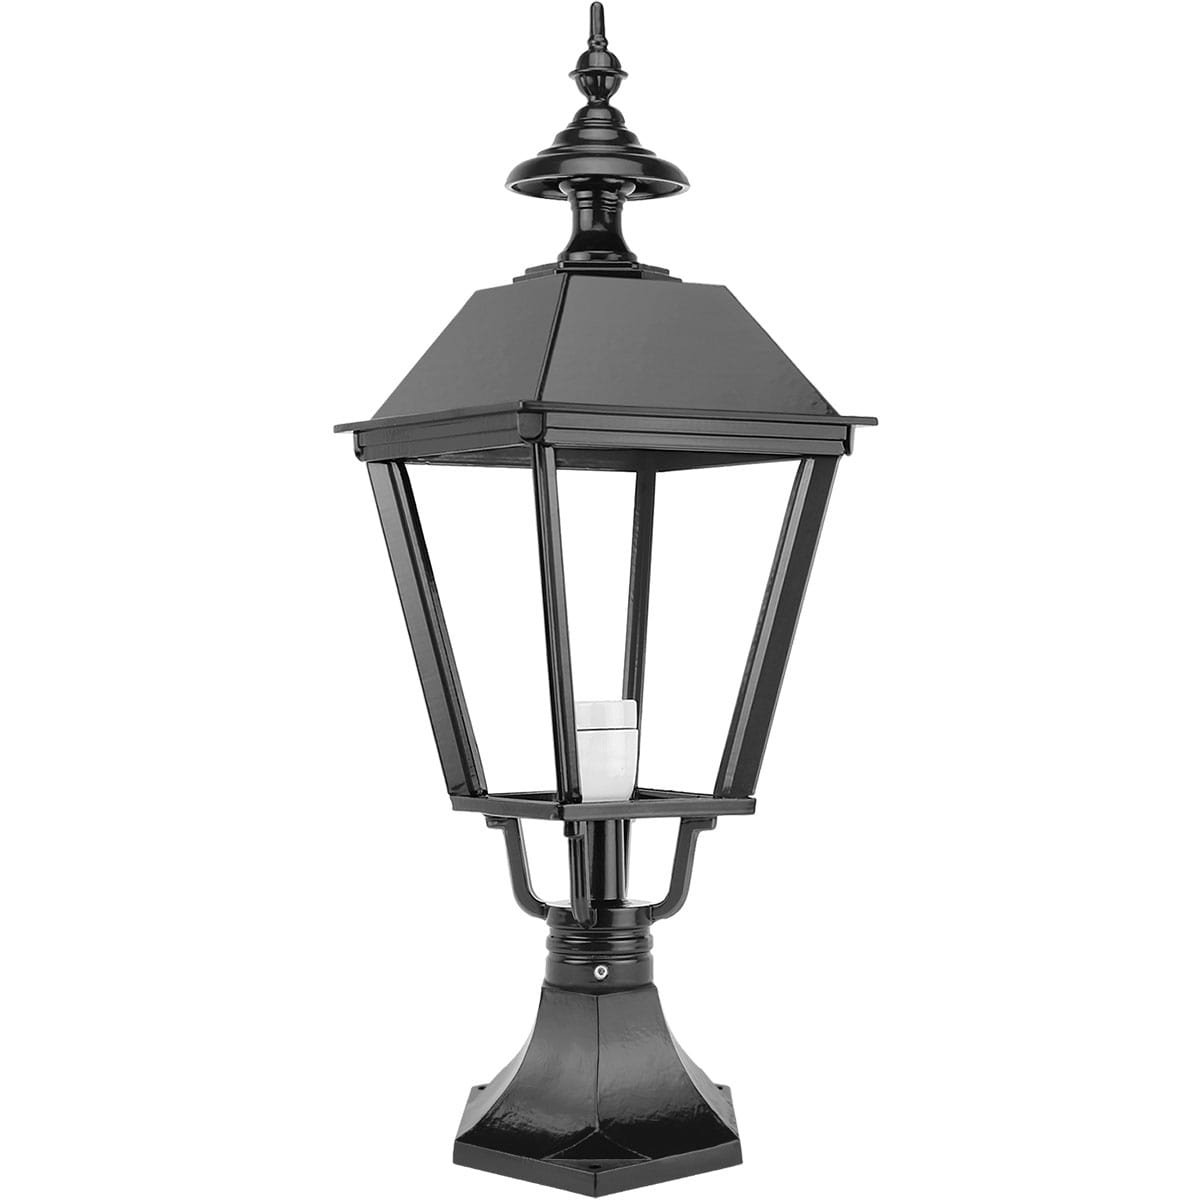 Lampe sur poteau Muntendam - 64 cm